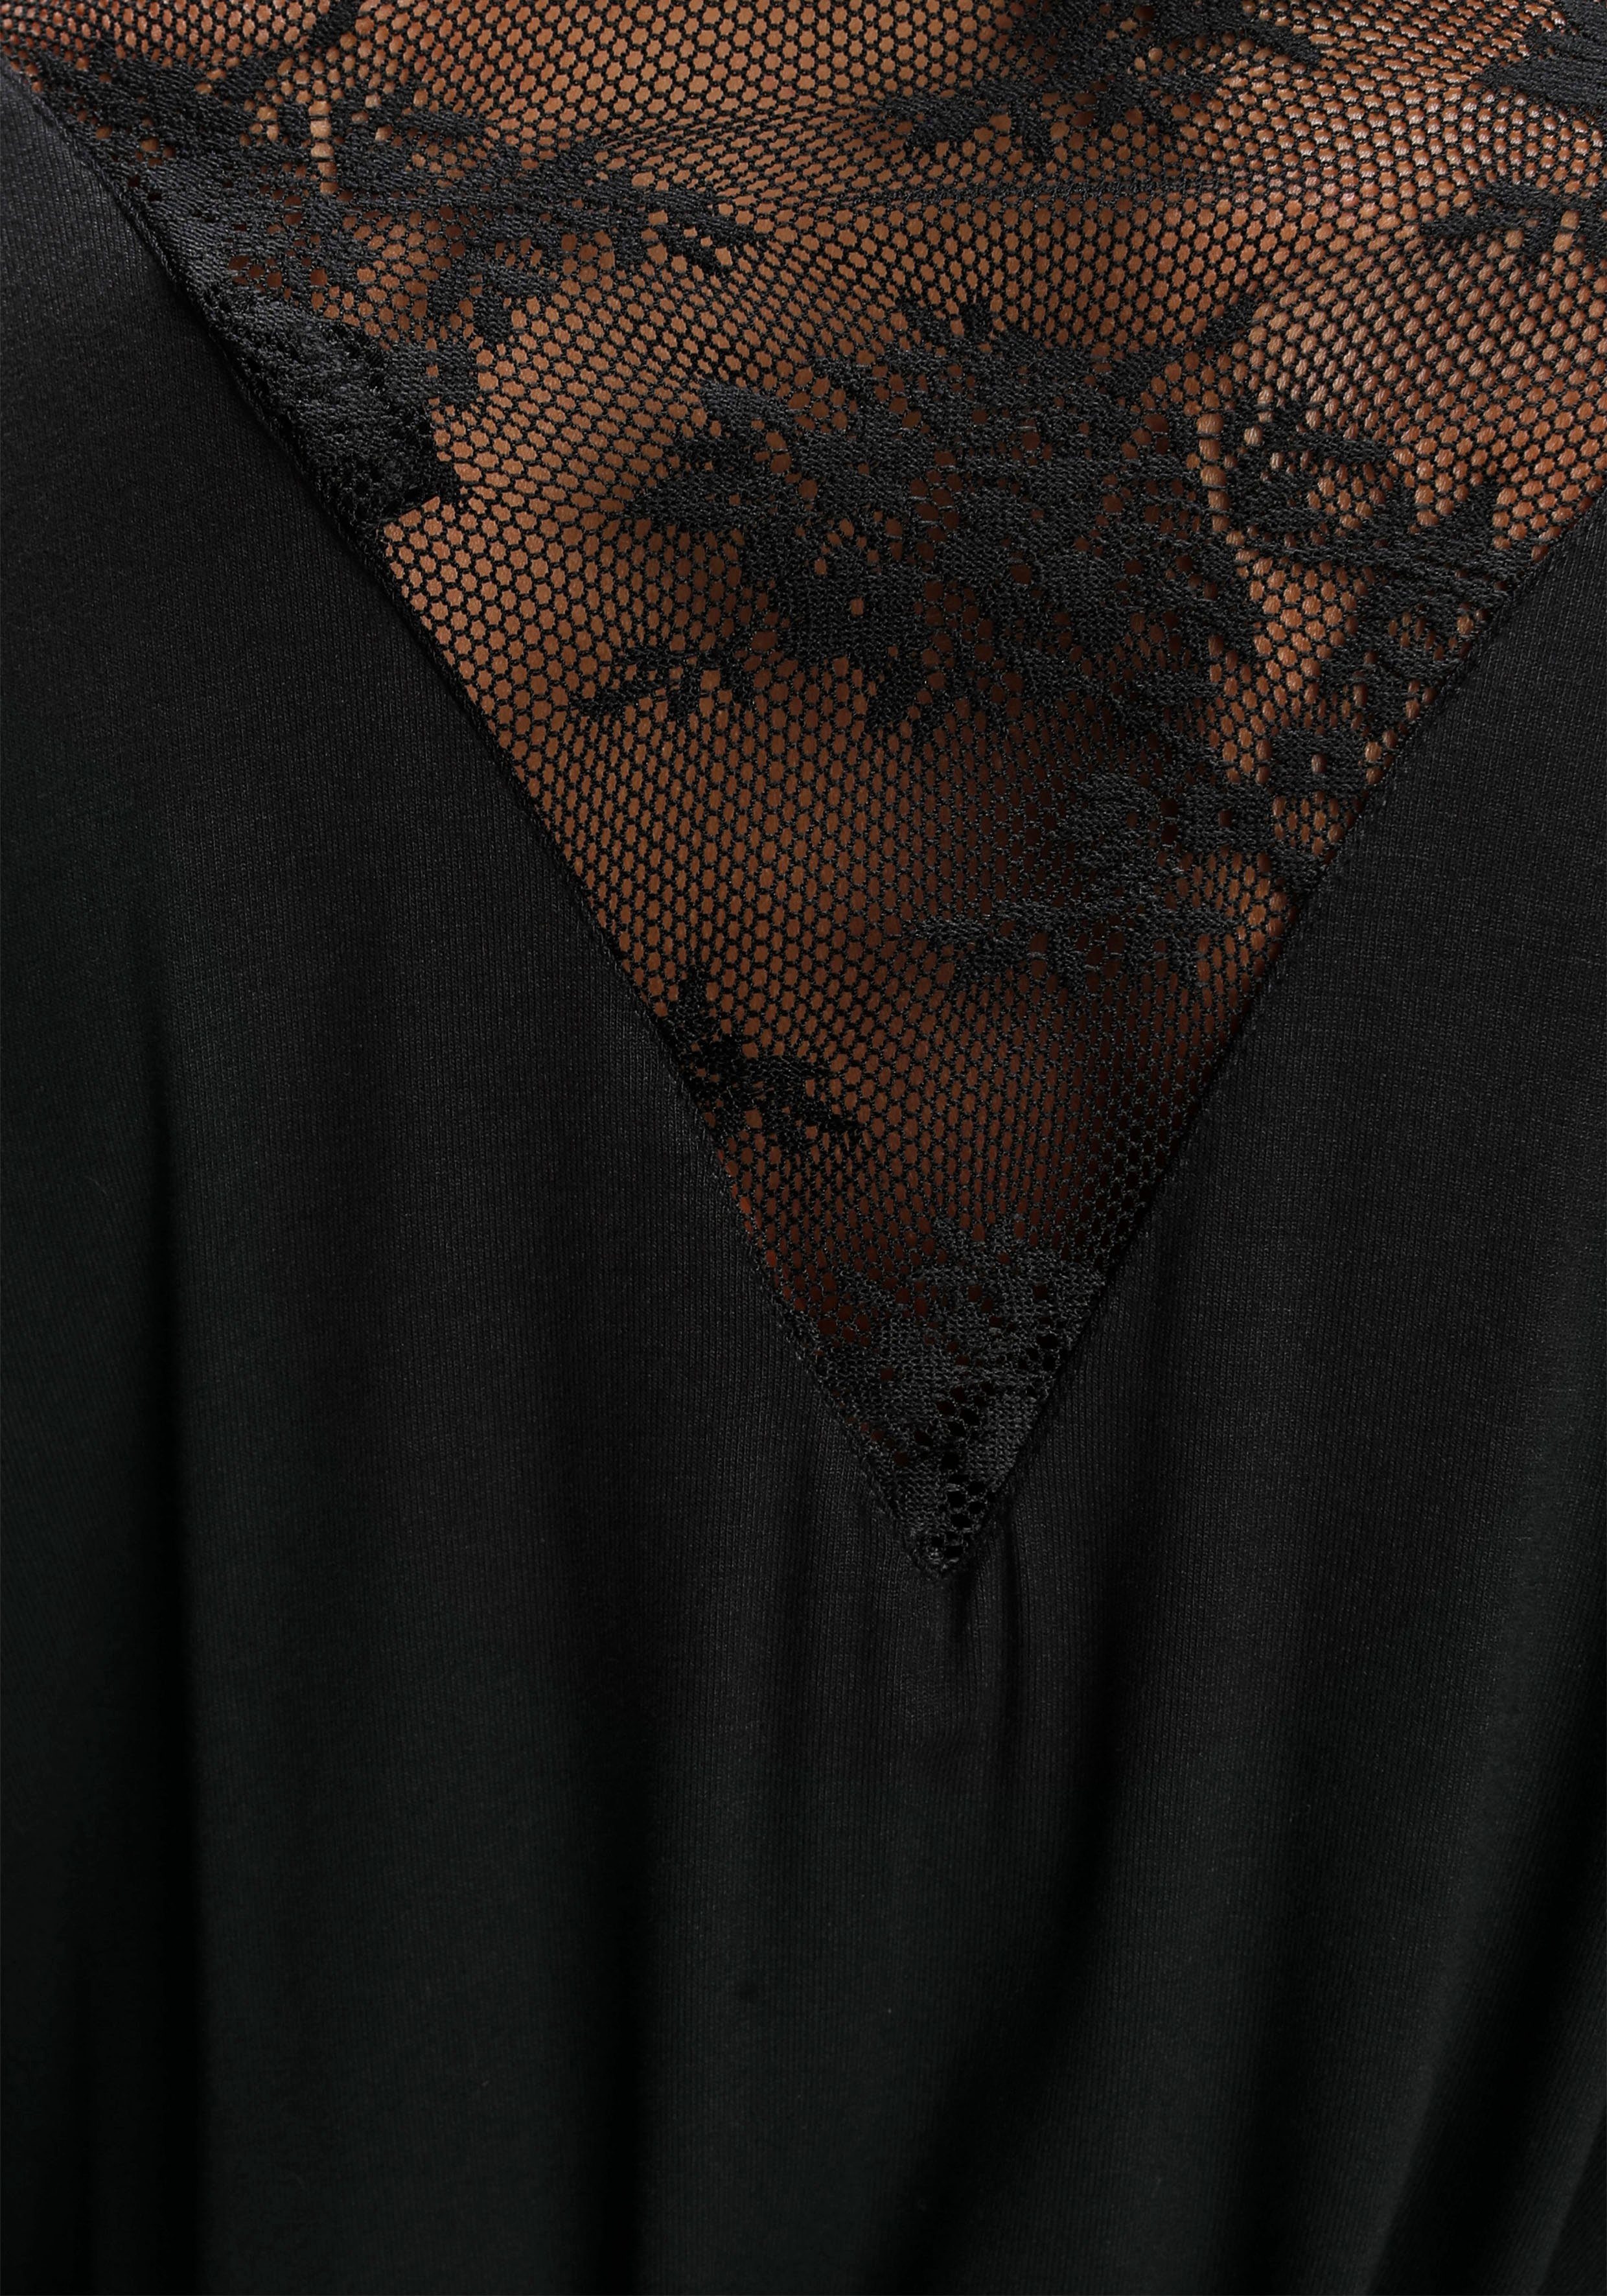 Bruno Banani Kurzform, schwarz Viskose, schönen Kimono, Spitzendetails mit